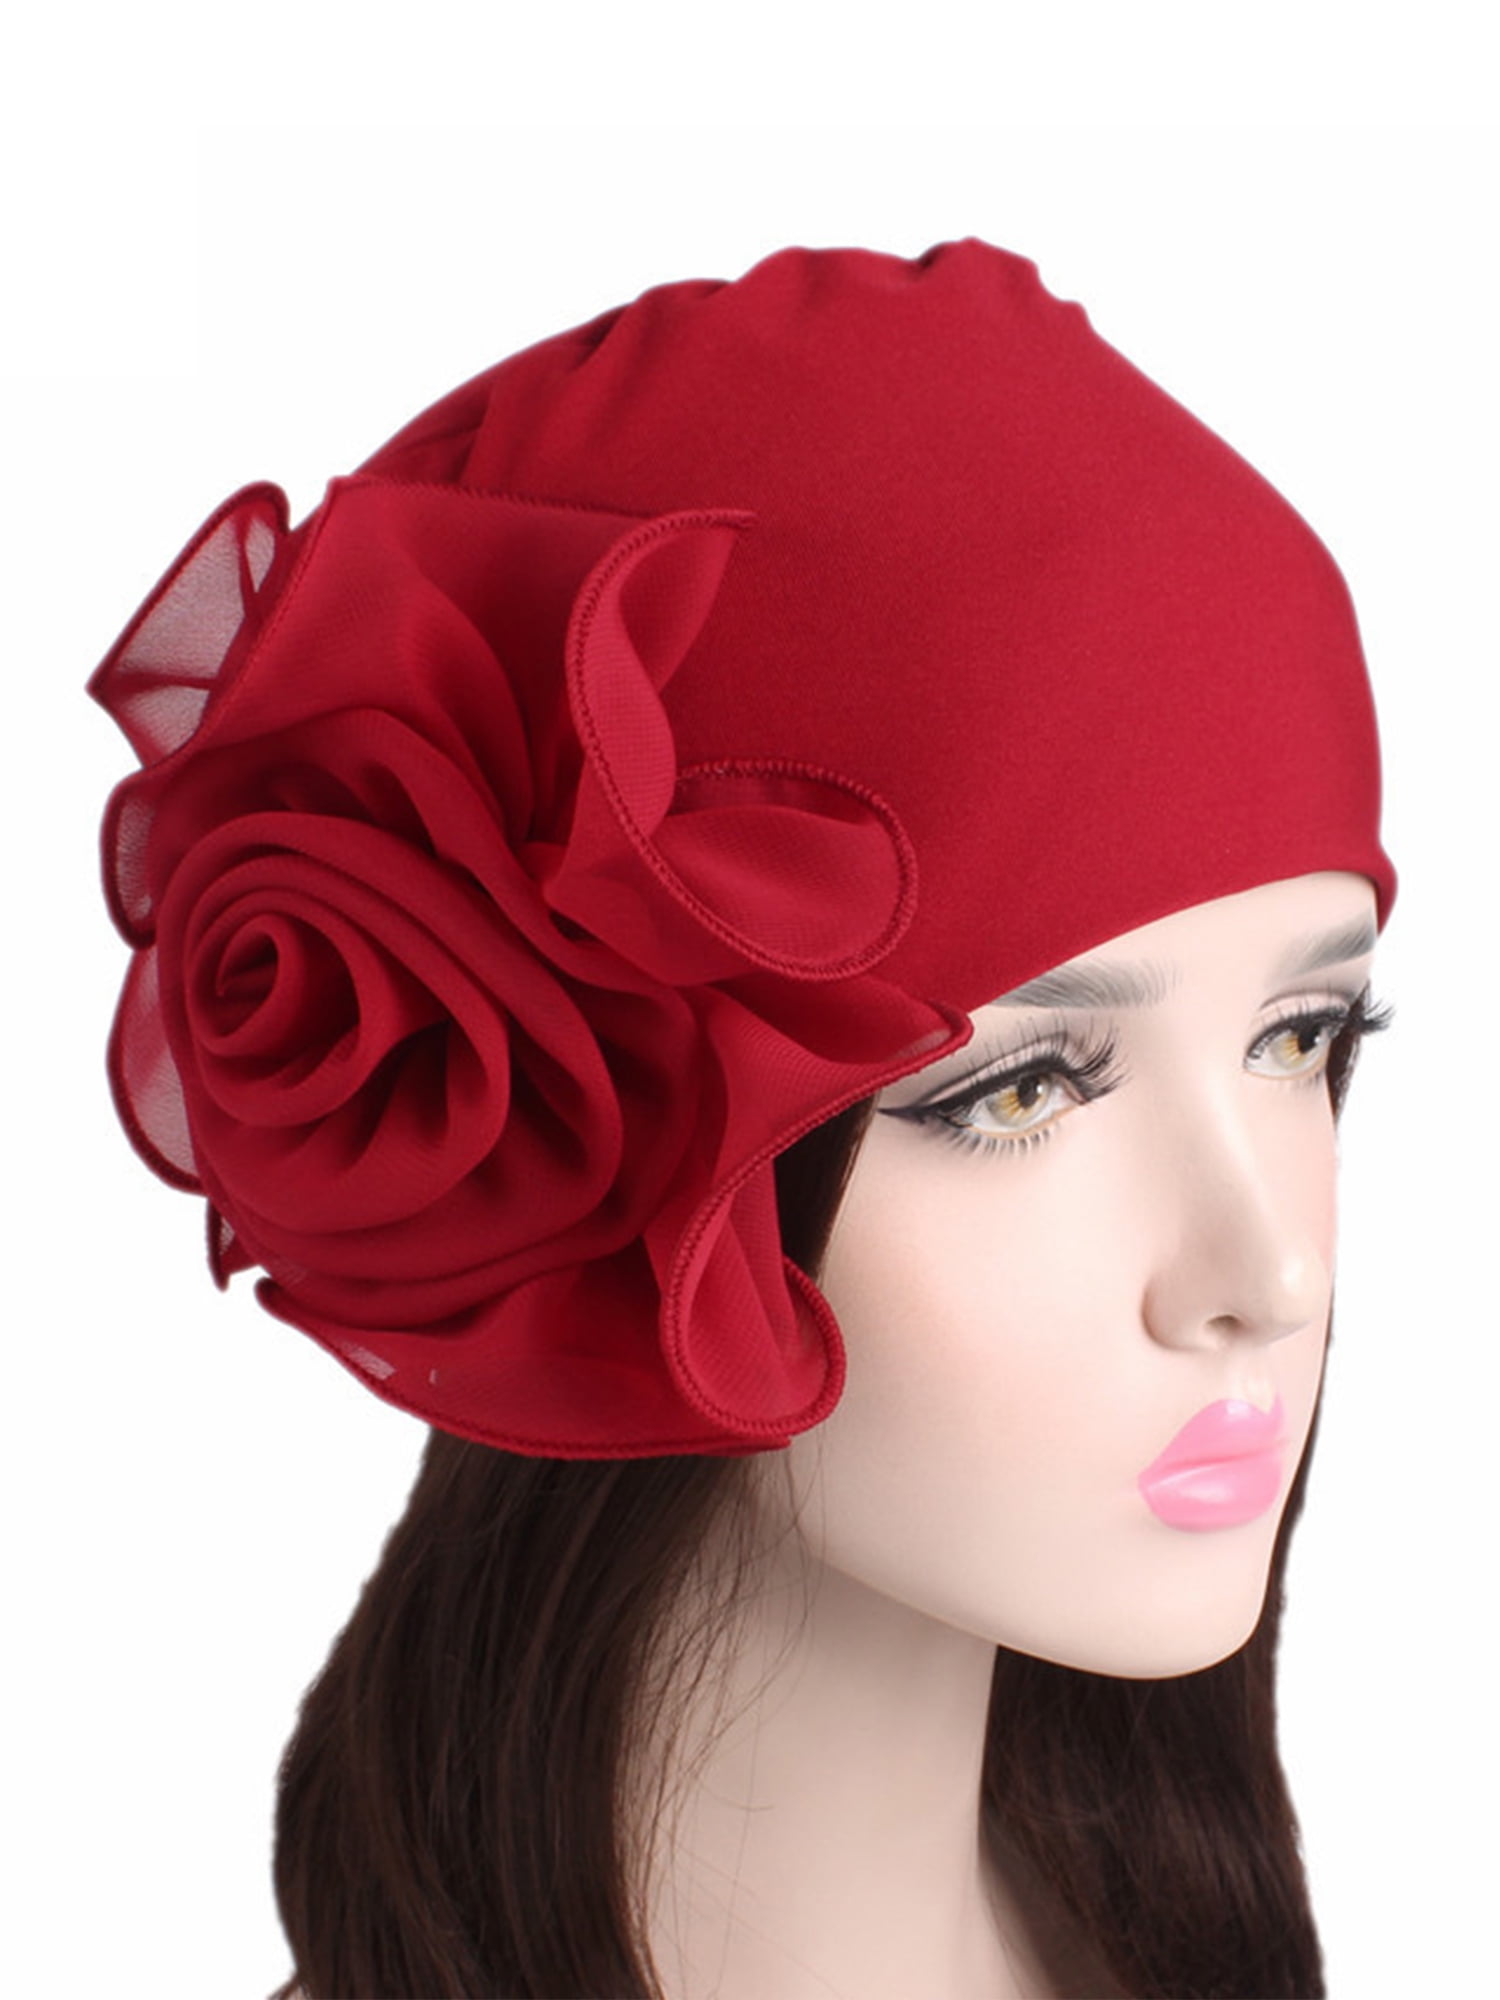 Women Cancer Chemo Hair Loss Flower Turban CapGirls Fashion Headwear Hats 